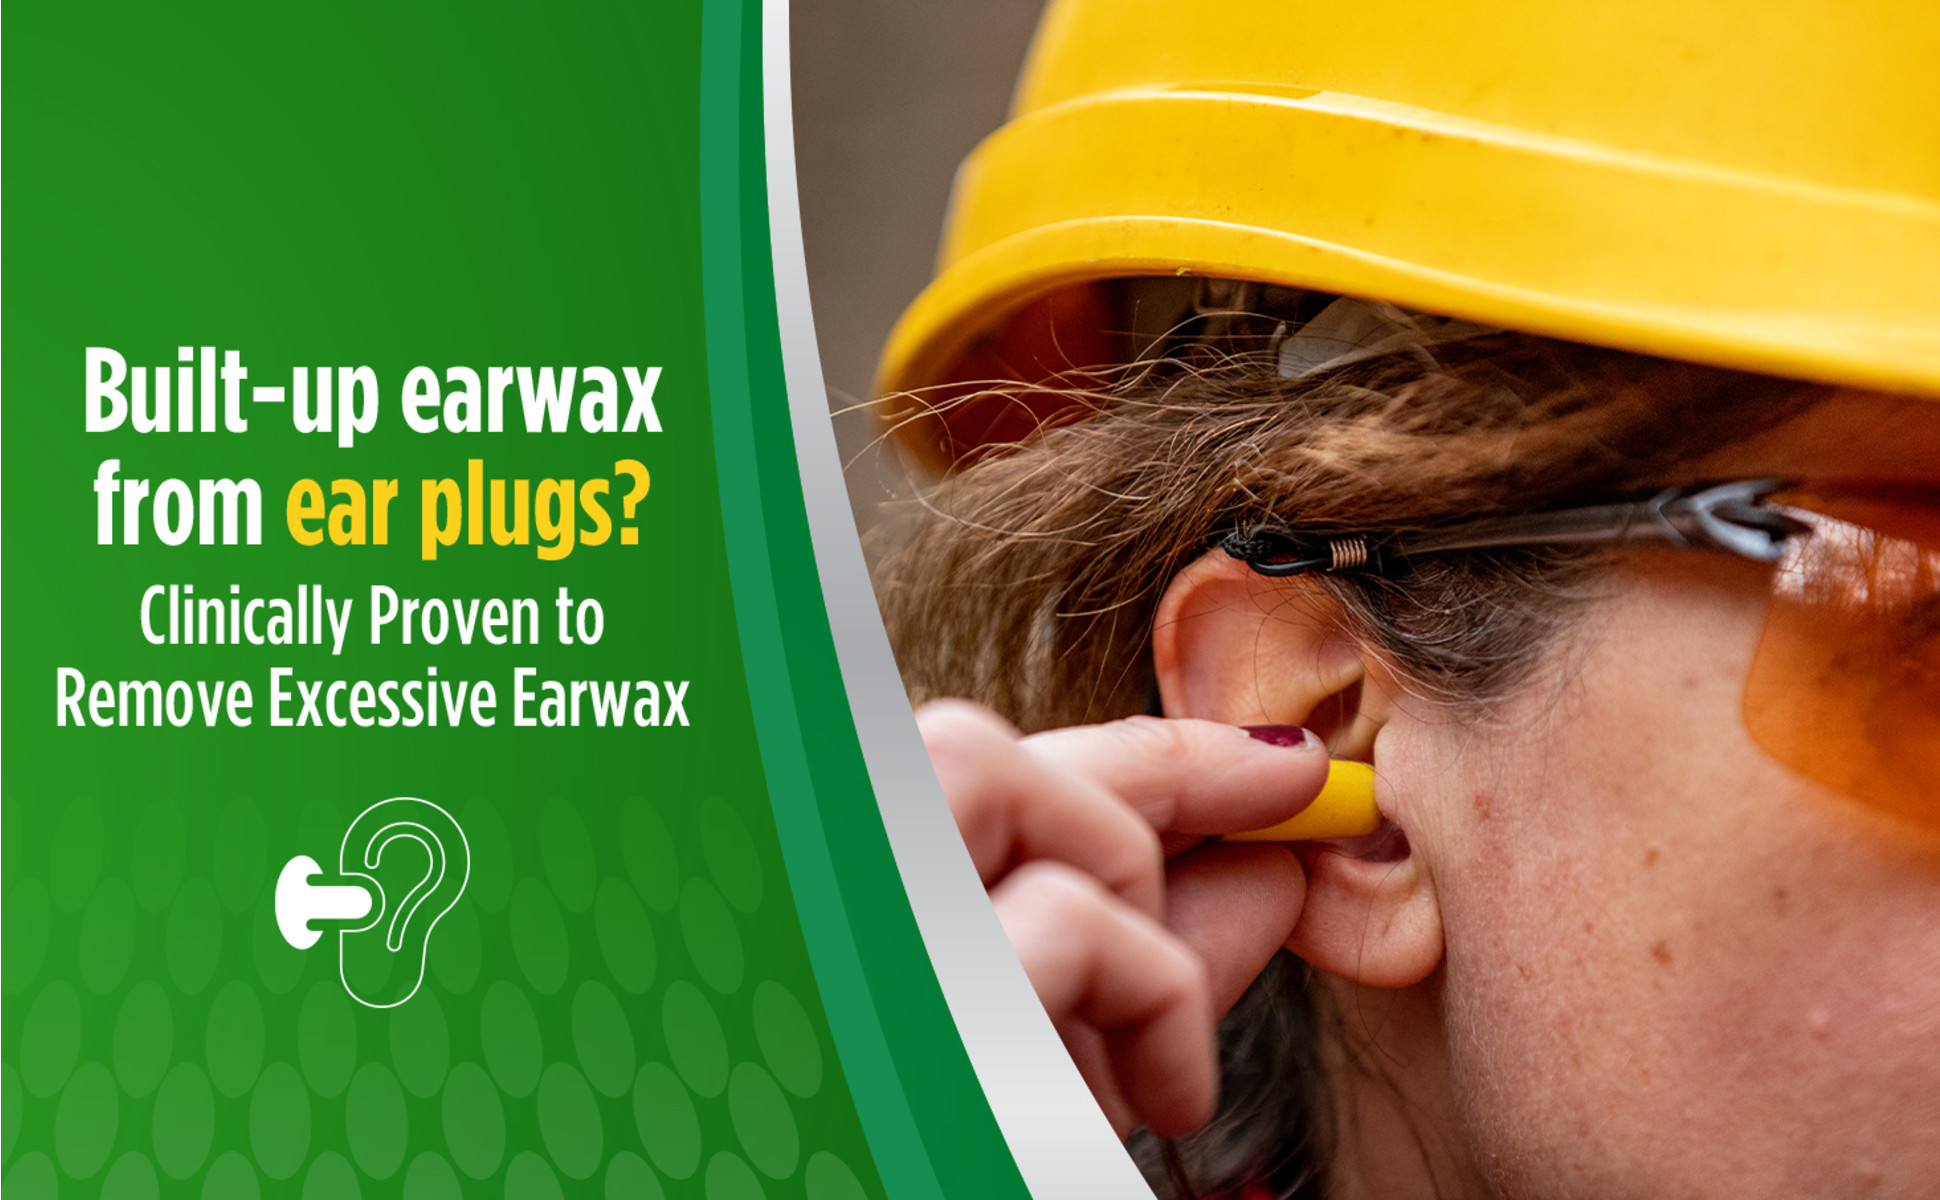 Debrox Ear Wax Removal Drops, Gentle Microfoam Ear Wax Remover, 0.5 fl oz